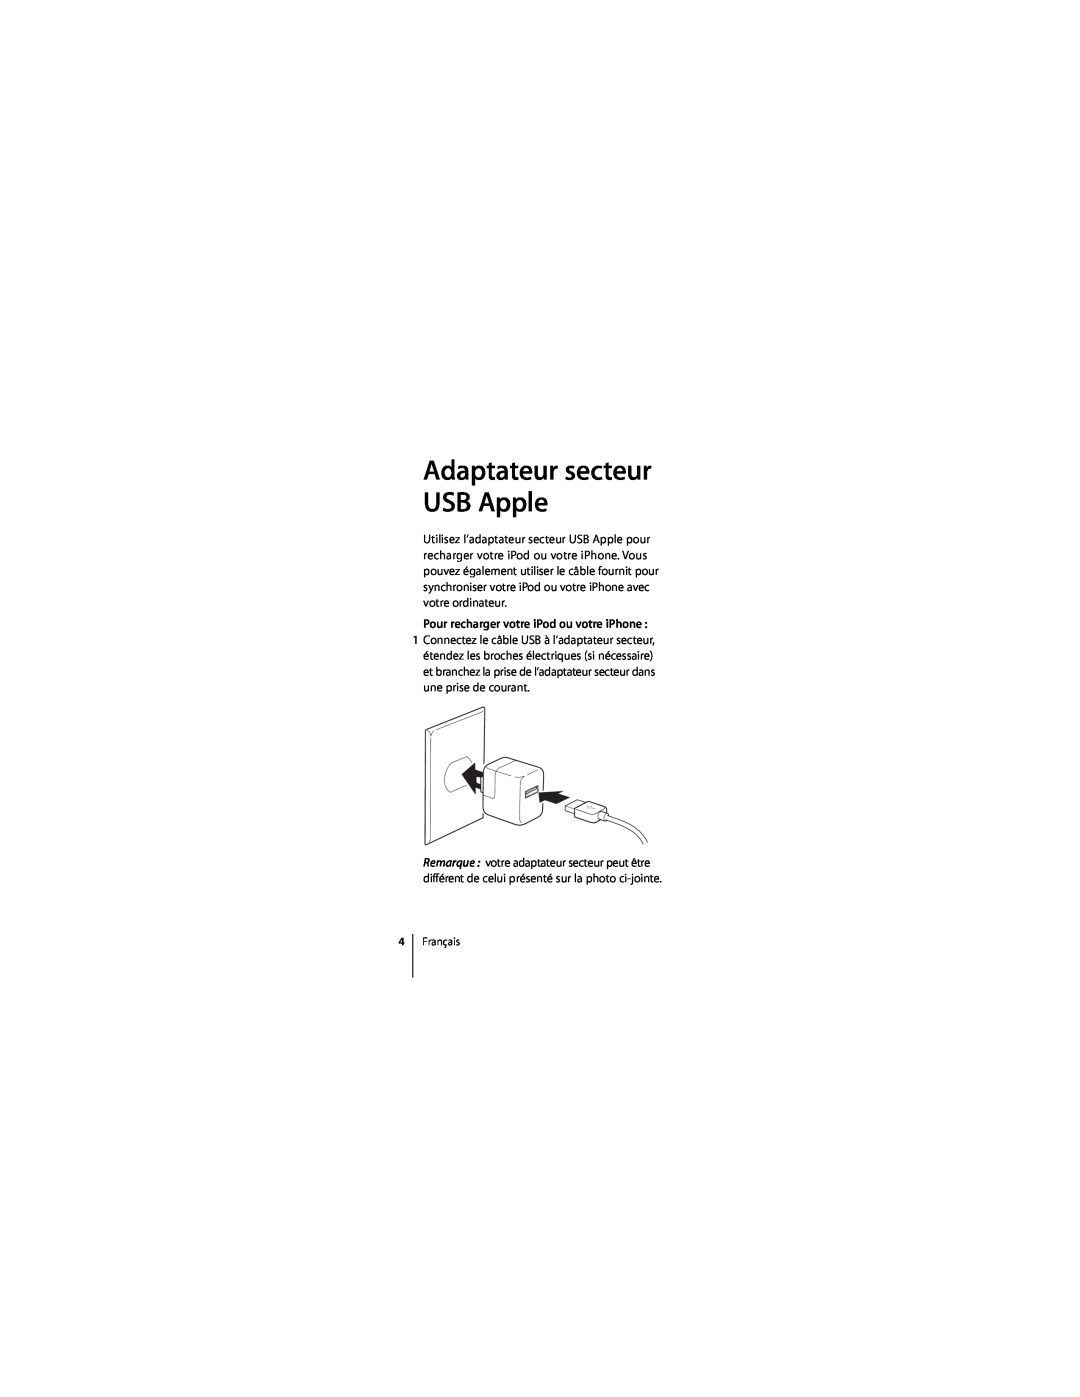 Apple ZM034-4835-A manual Pour recharger votre iPod ou votre iPhone, Adaptateur secteur USB Apple 